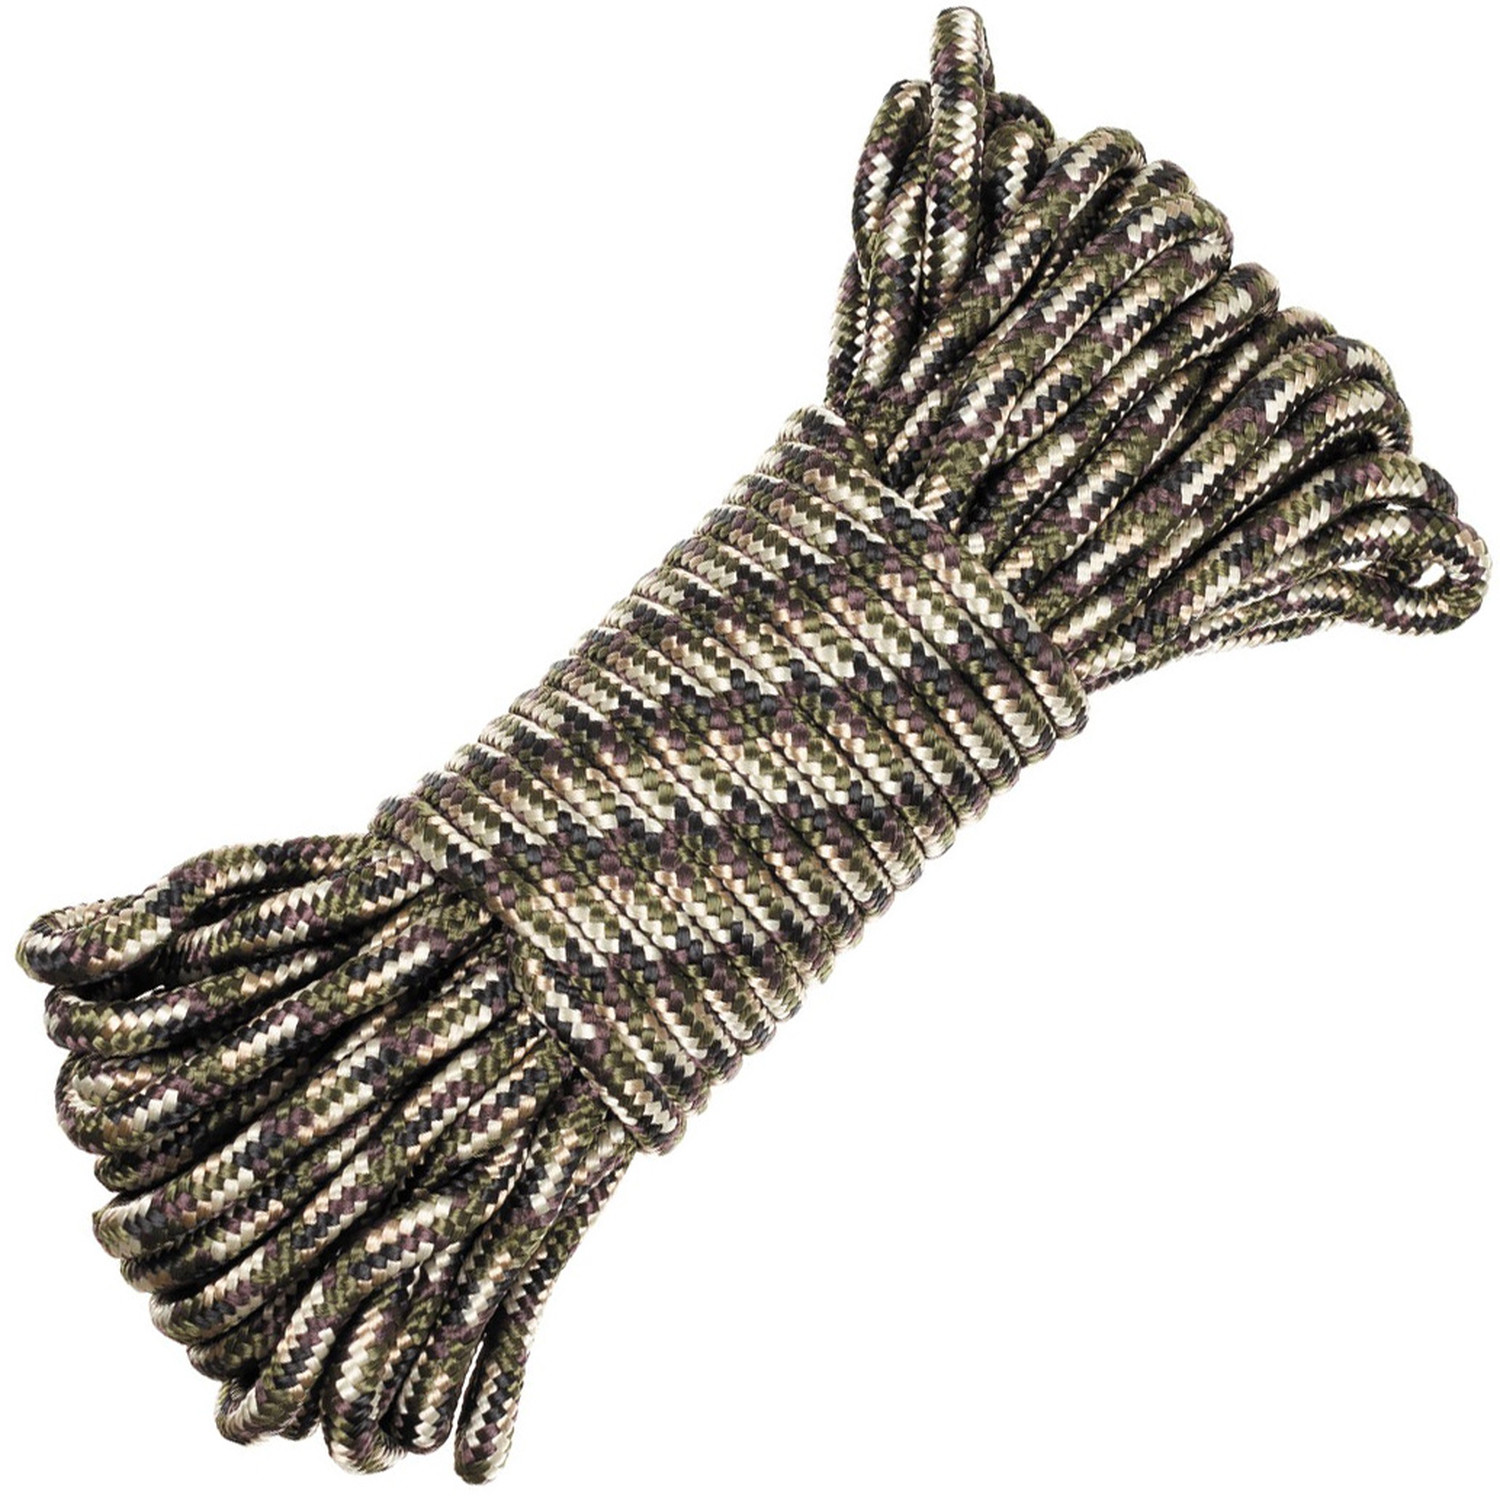 Seil in Tarnfarben (Camo) mit Durchmesser 7 mm, 15 m lang